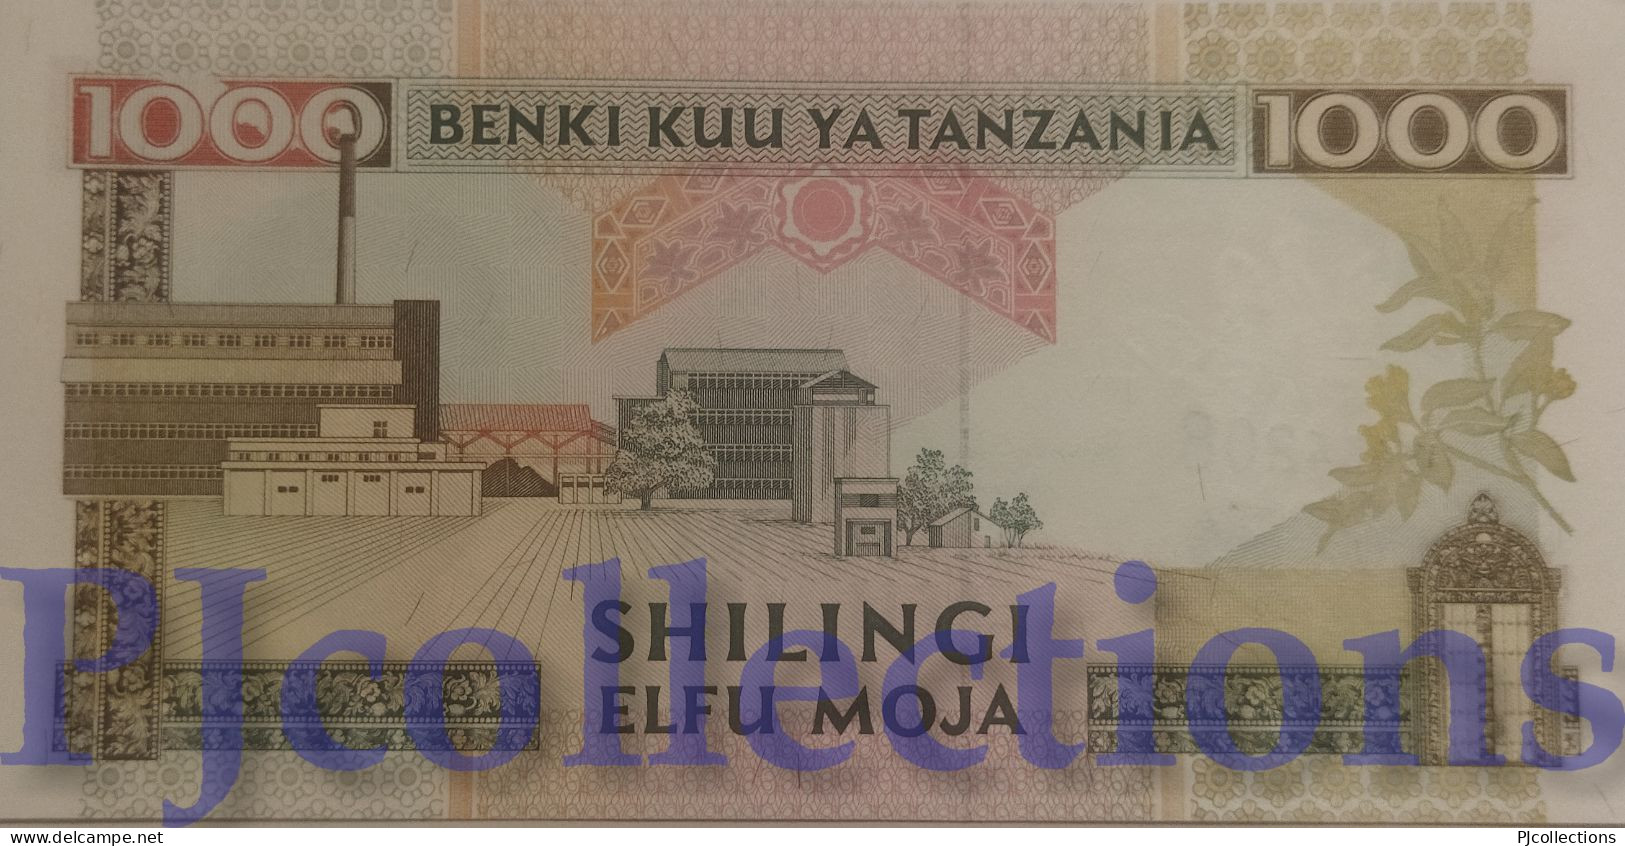 TANZANIA 1000 SHILINGI 1993 PICK 27a UNC - Tansania